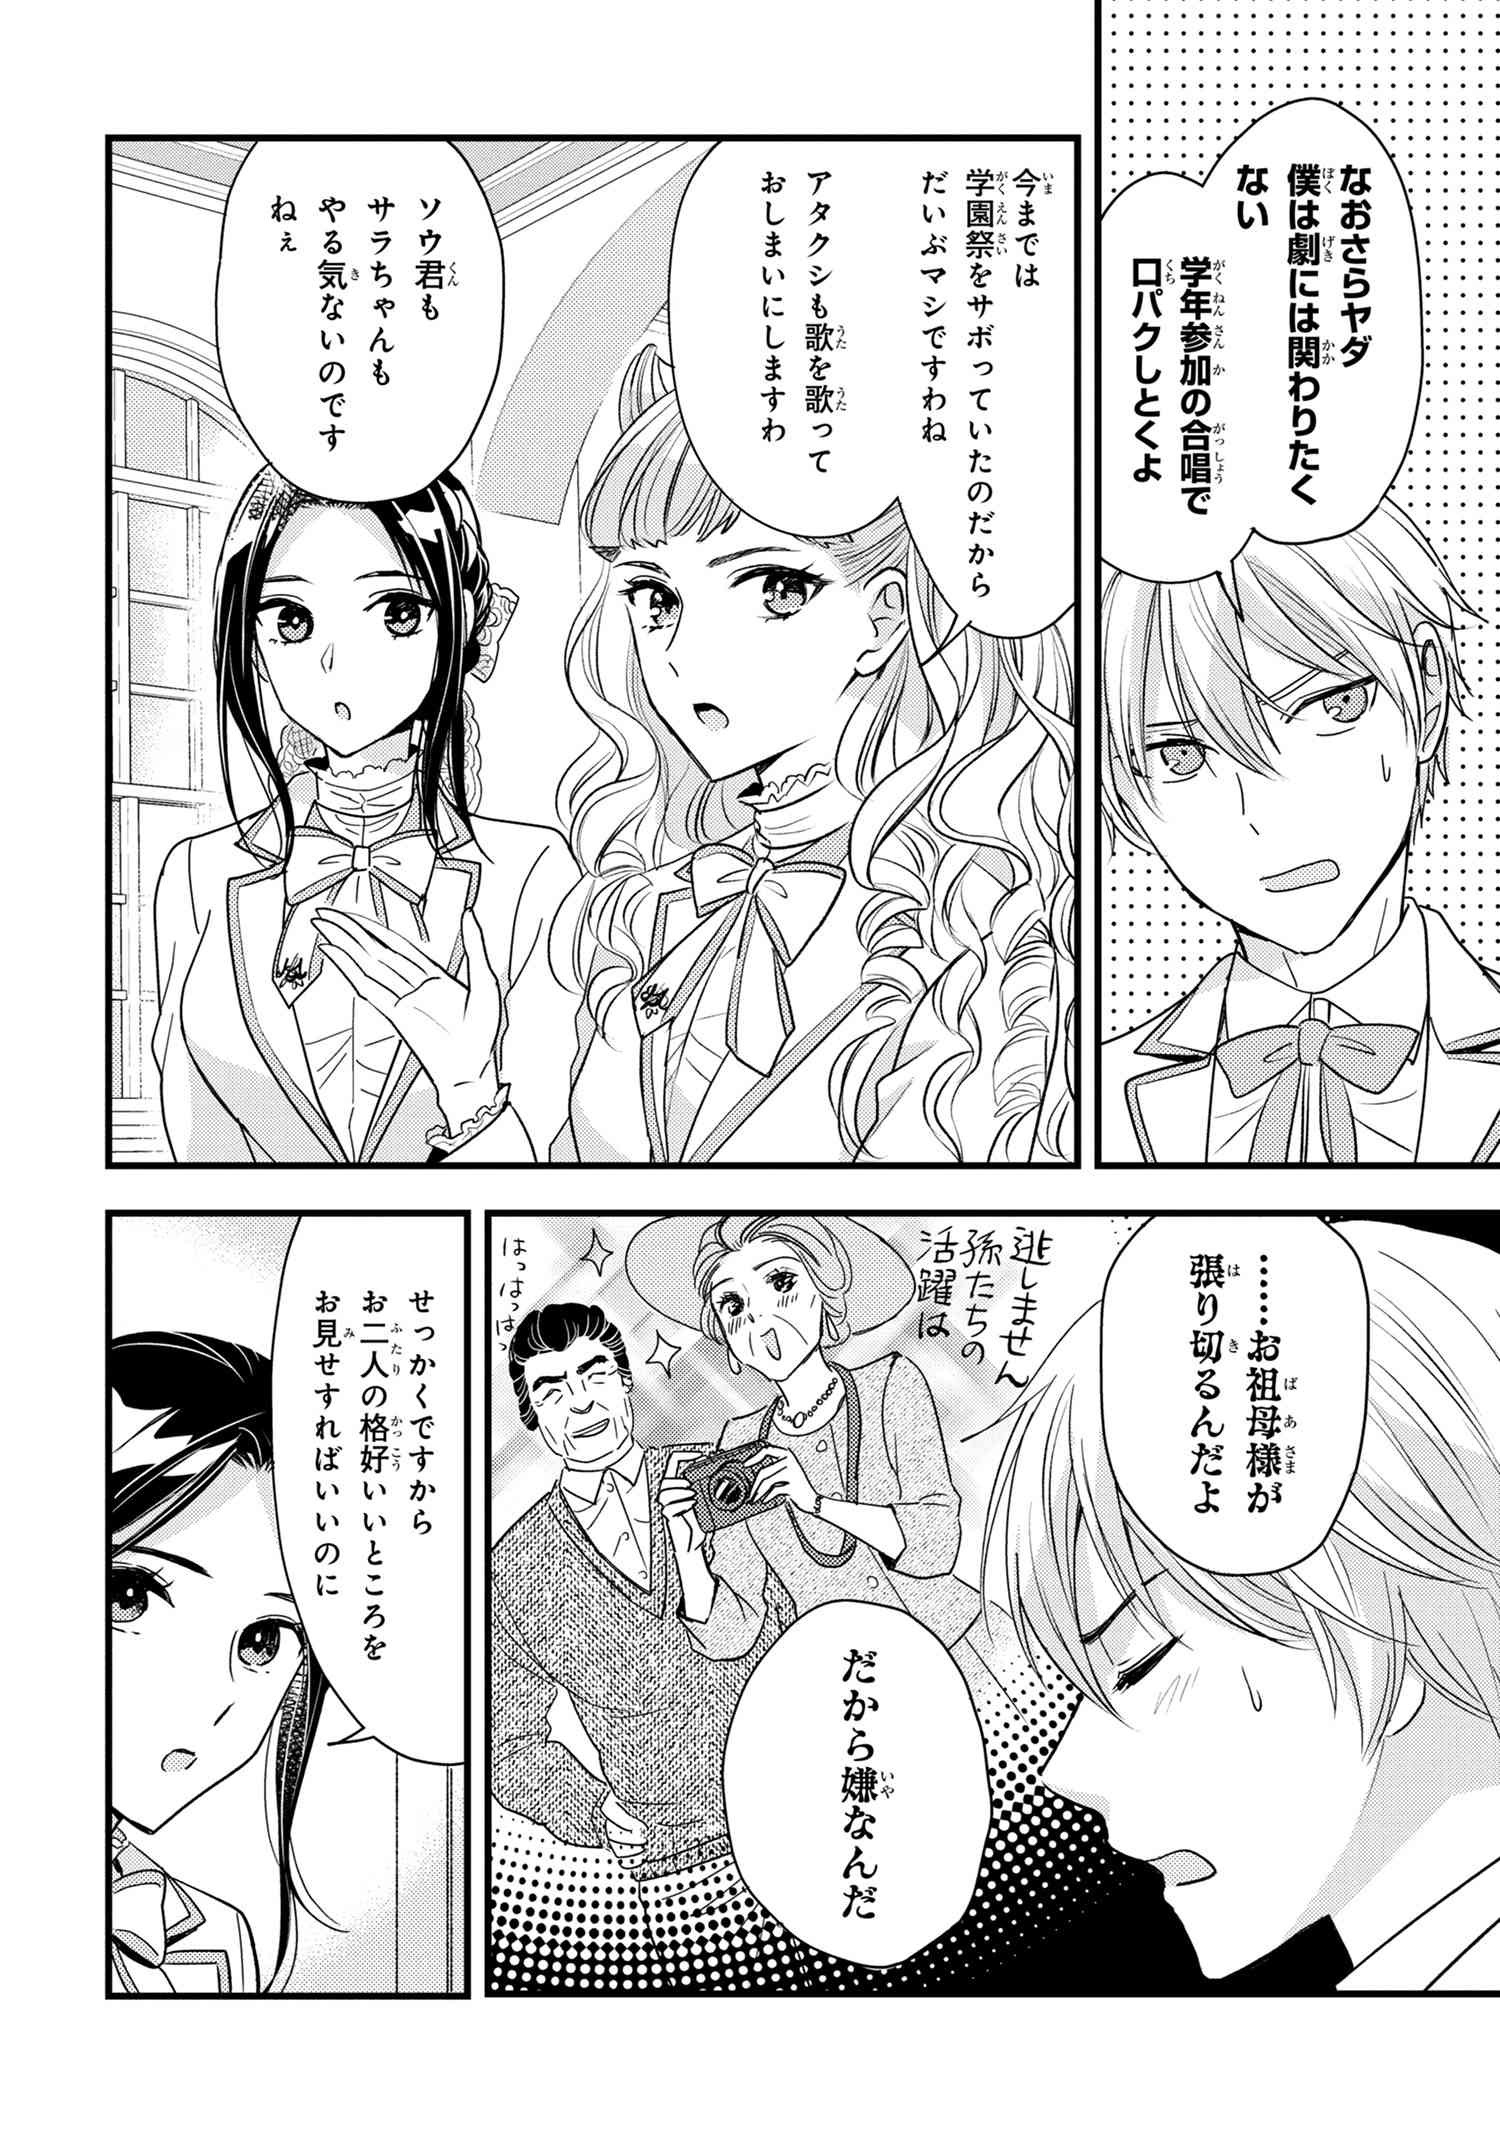 Reiko no Fuugi Akuyaku Reijou to Yobarete imasu ga, tada no Binbou Musume desu - Chapter 15-5 - Page 4